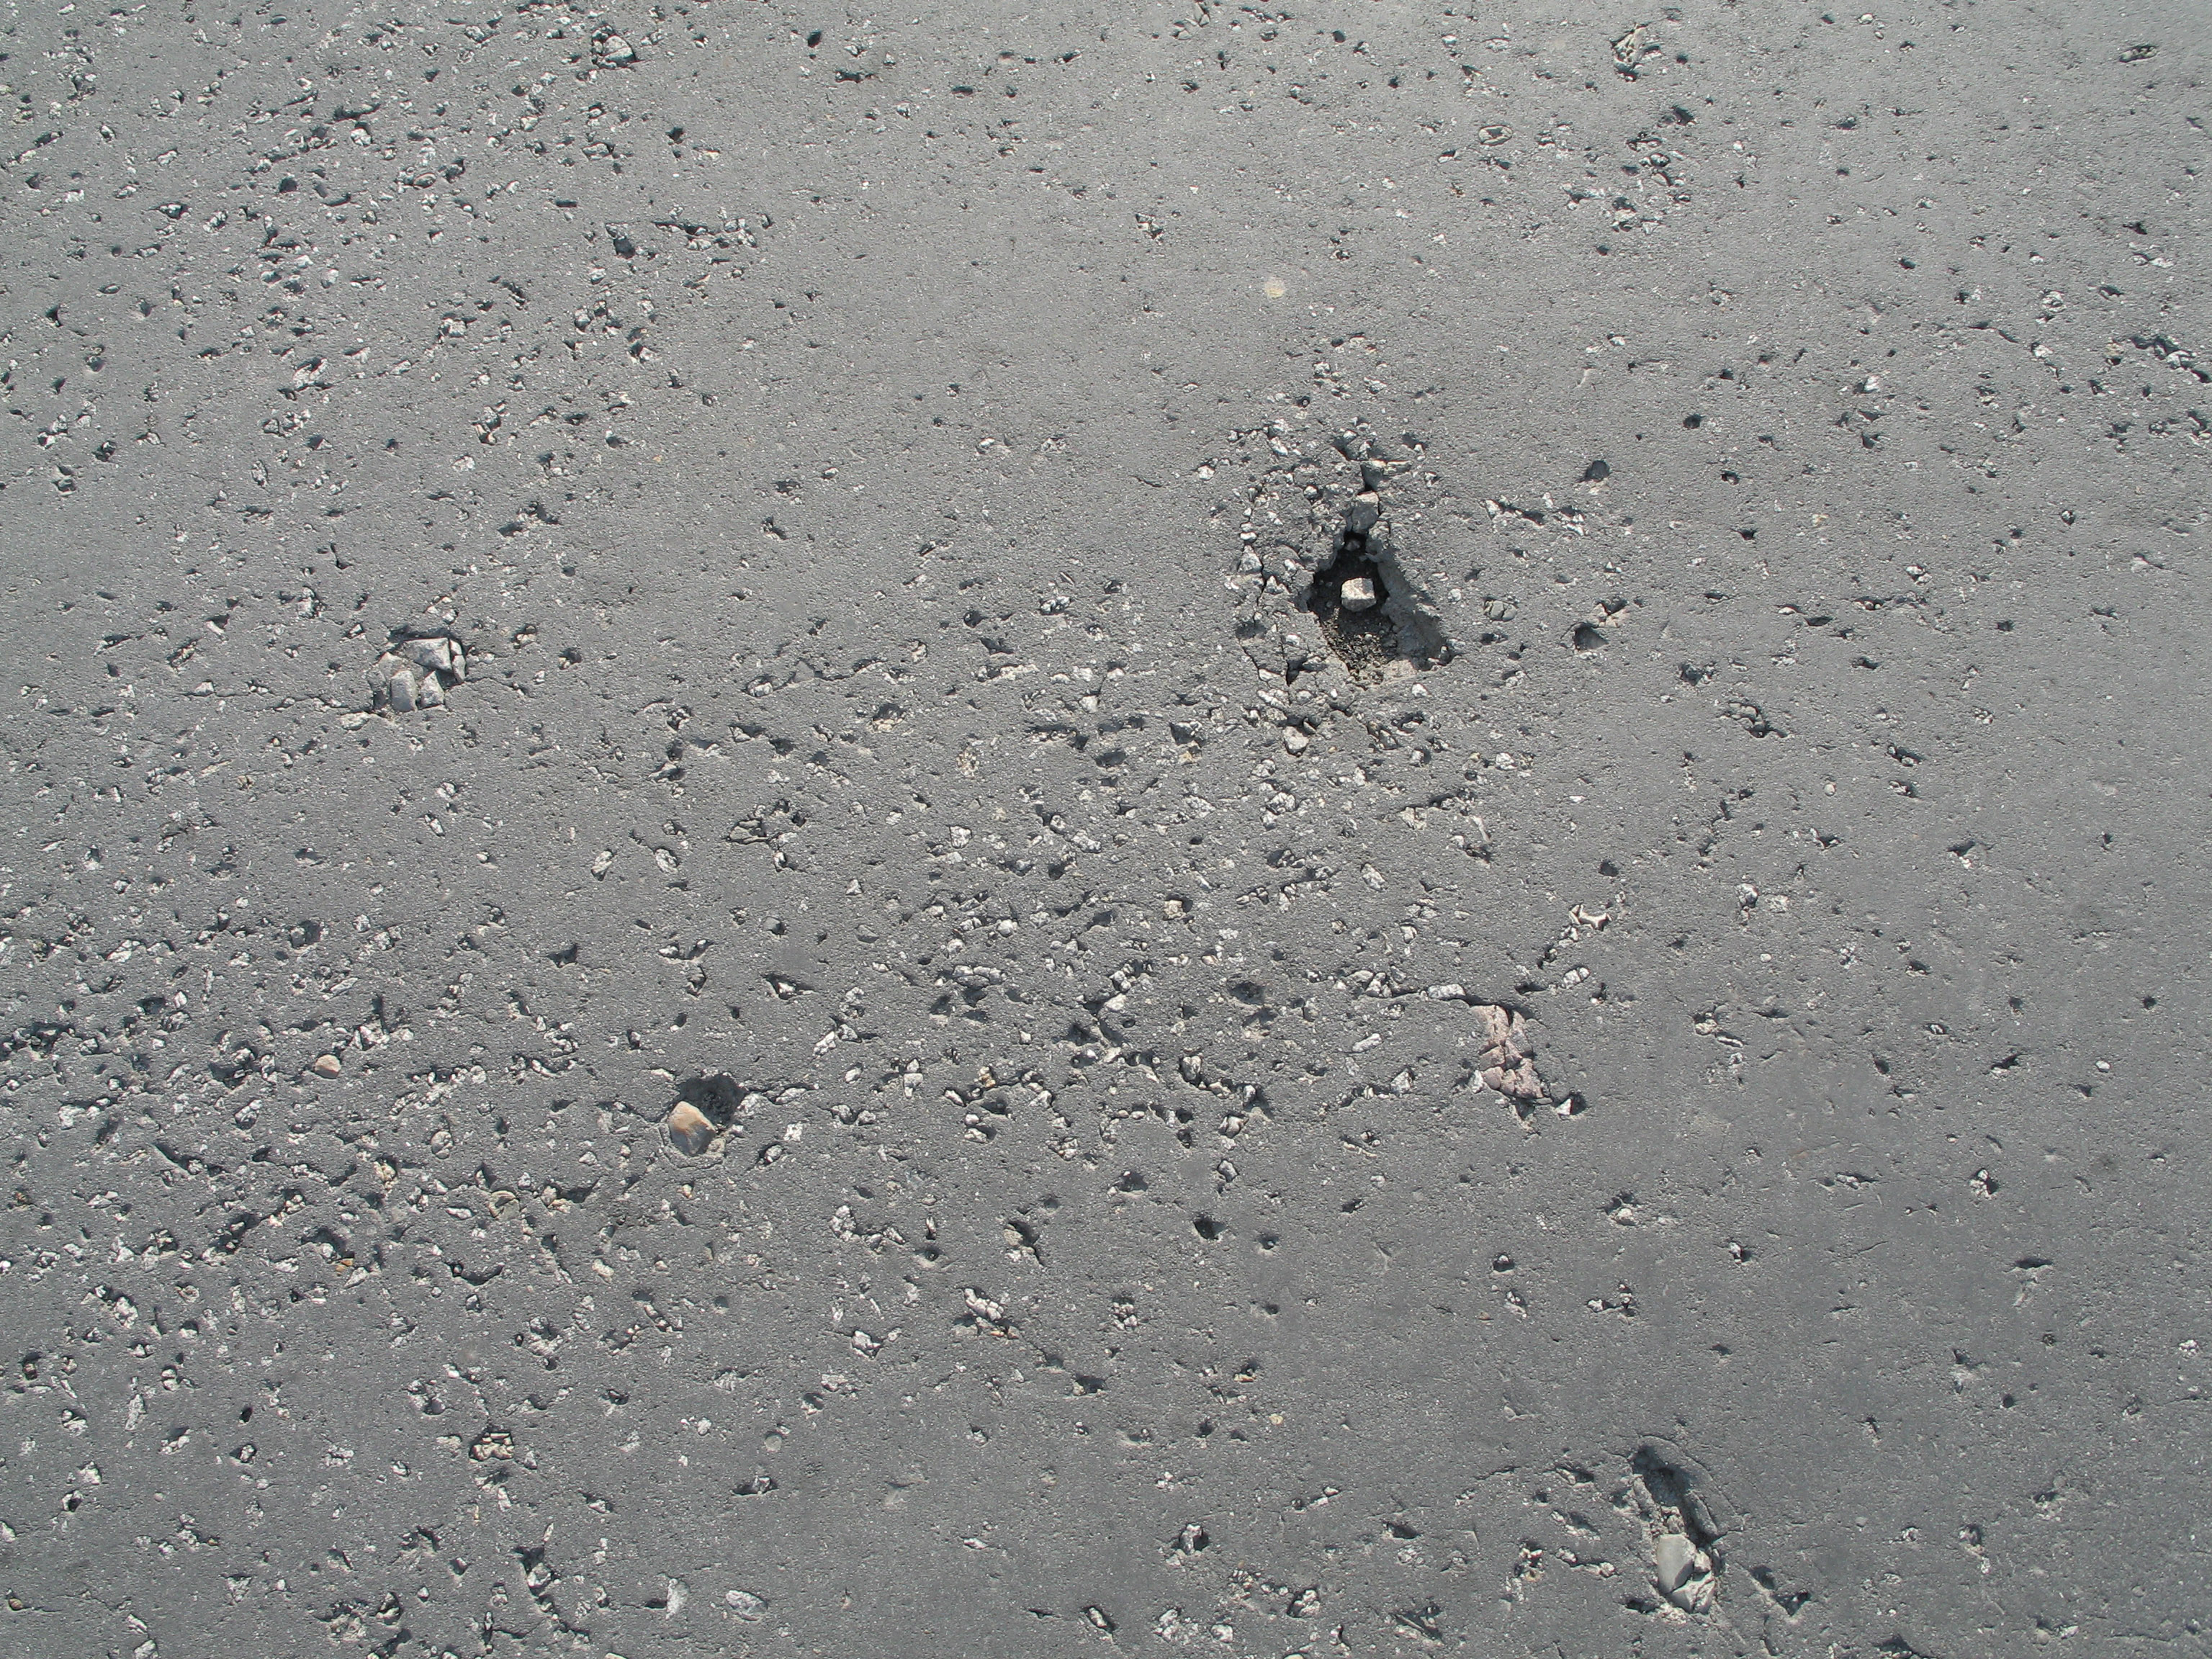 Gray asphalt texture background